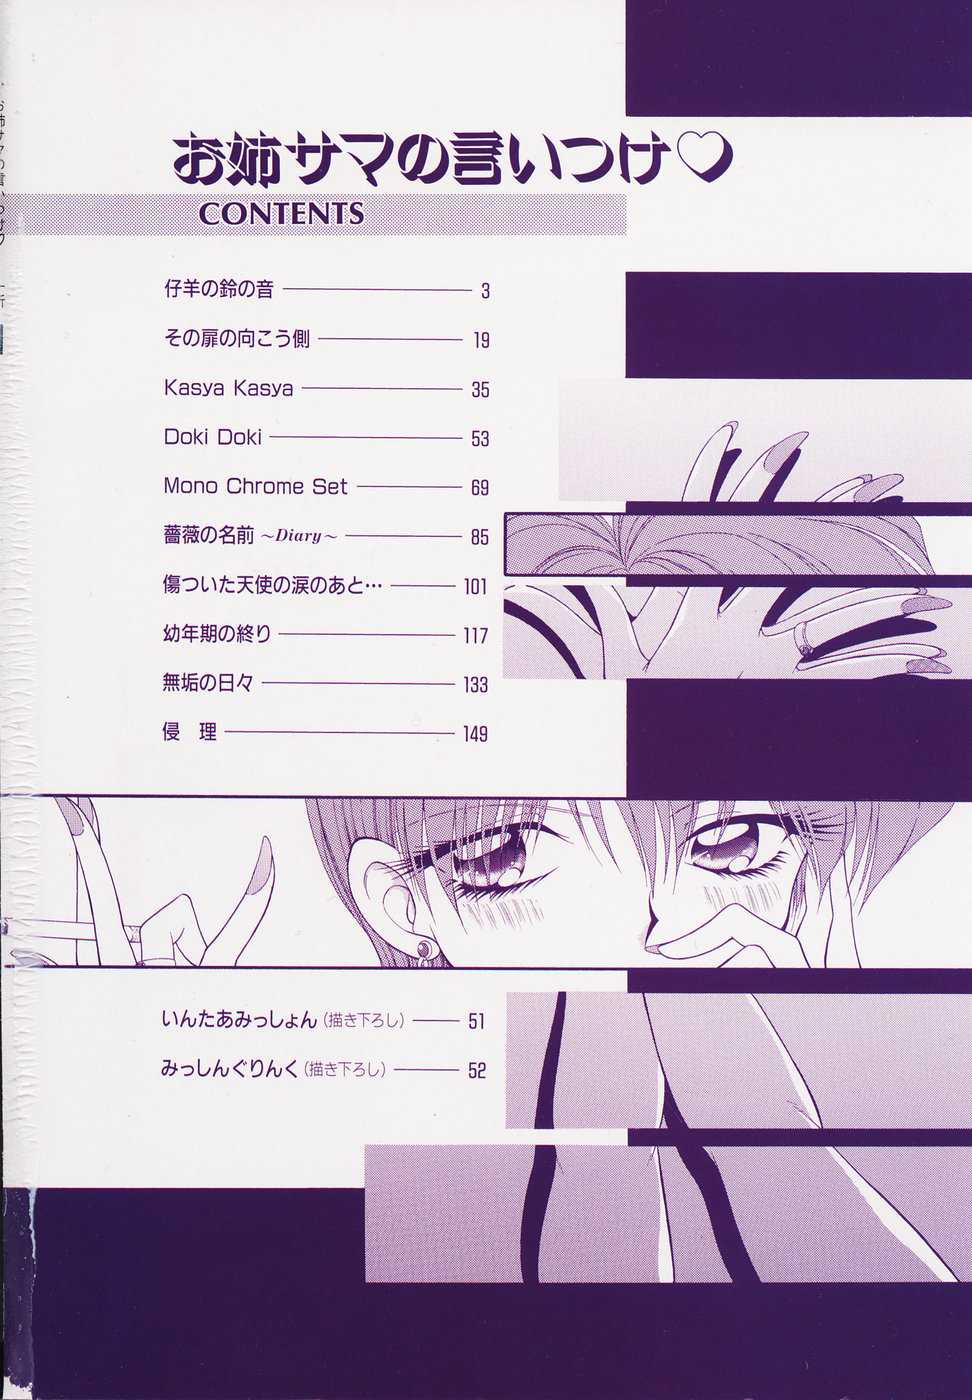 Adult Manga Shinrin Tamago O anesama no Iitsuke 1999-12-25 